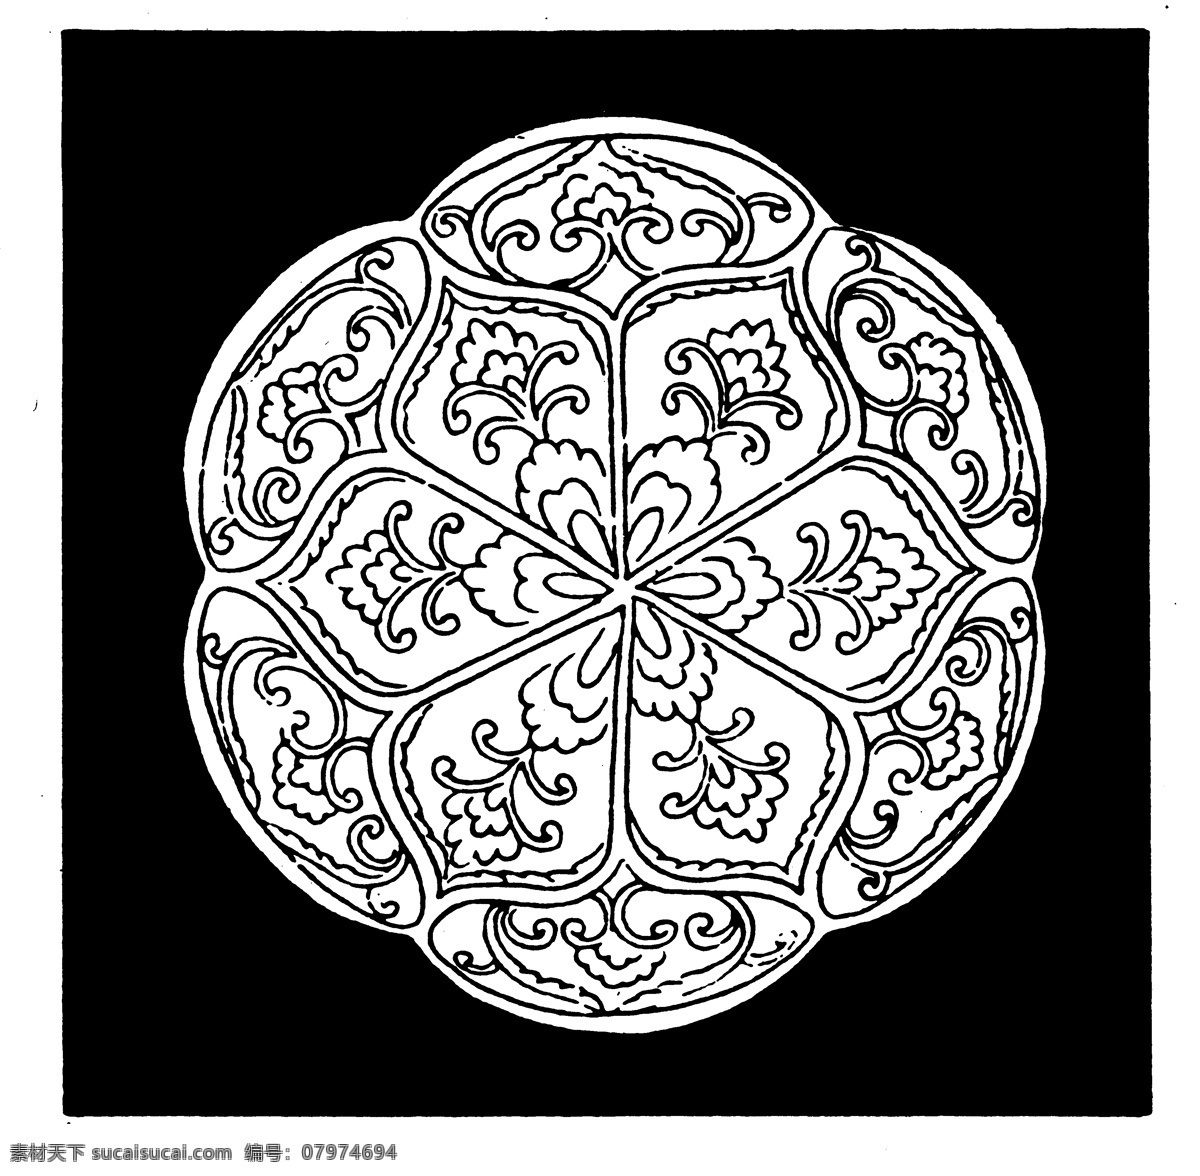 古代器物图案 隋唐五代图案 中国 传统 图案 设计素材 器物图案 装饰图案 书画美术 黑色